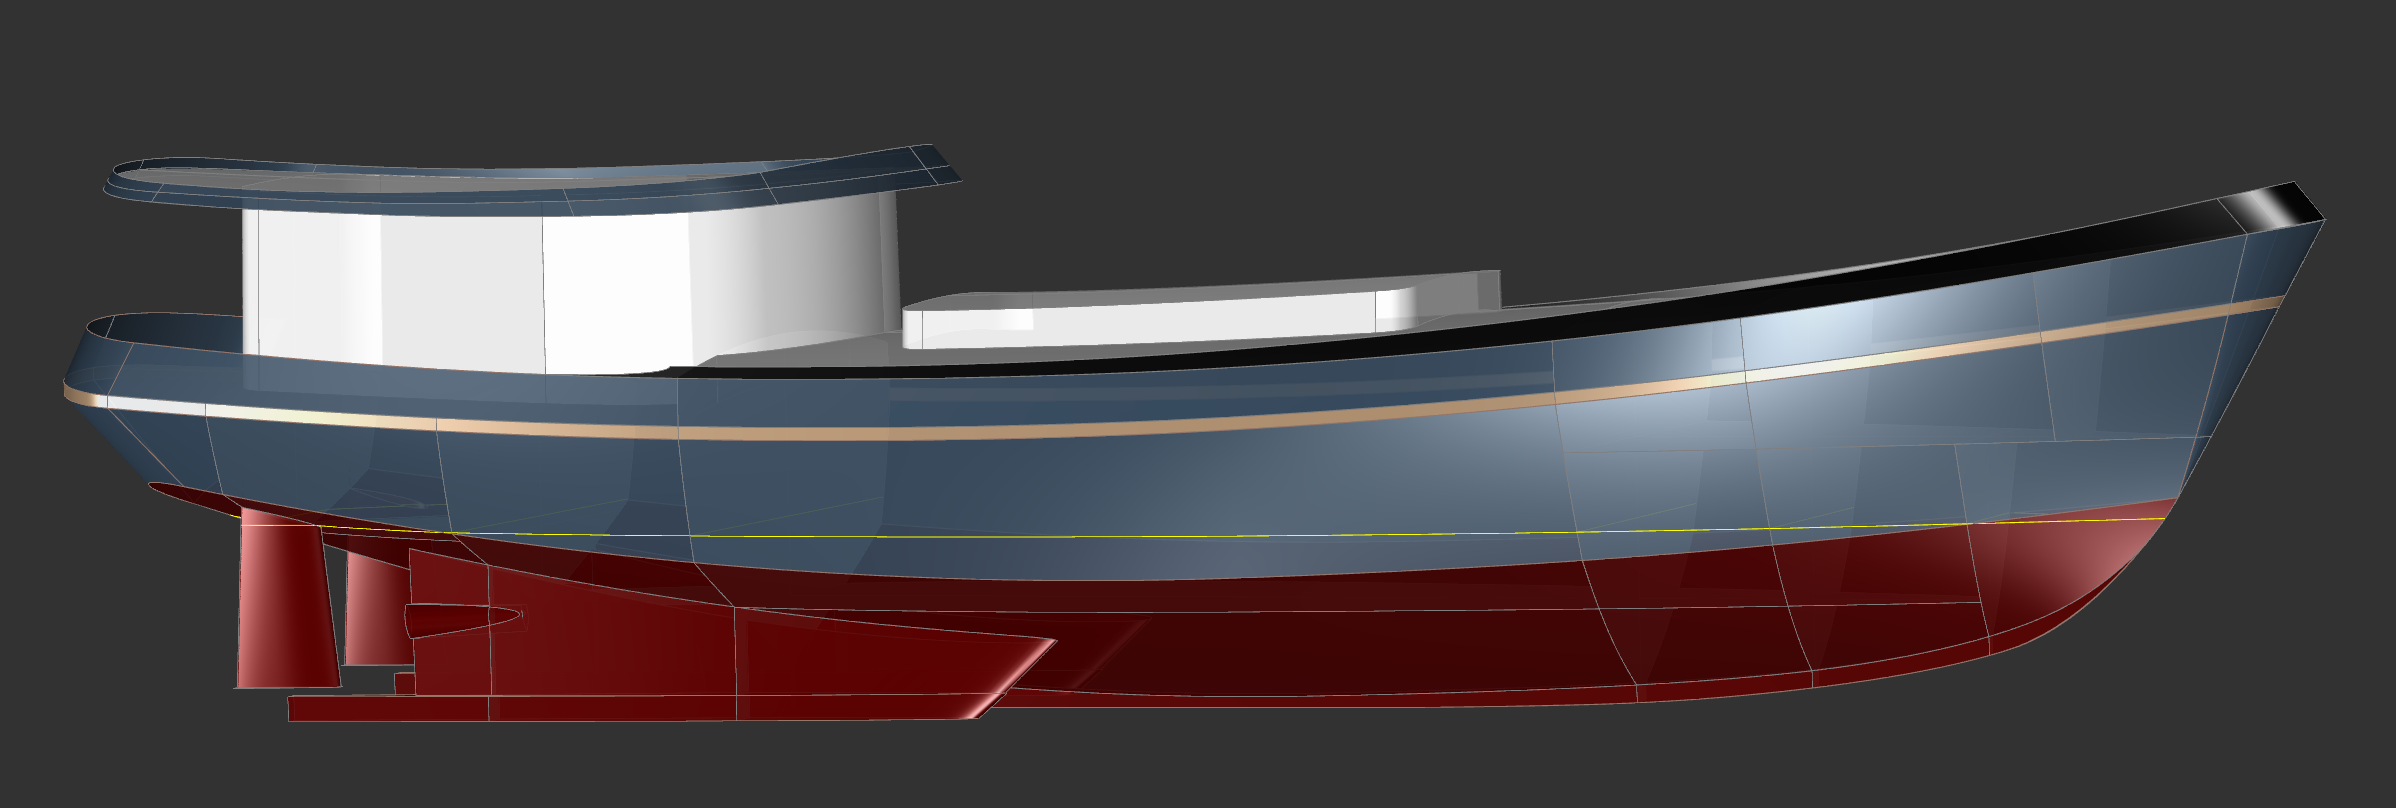 120' Motor Cargo Yacht  - Kasten Marine Design, Inc.